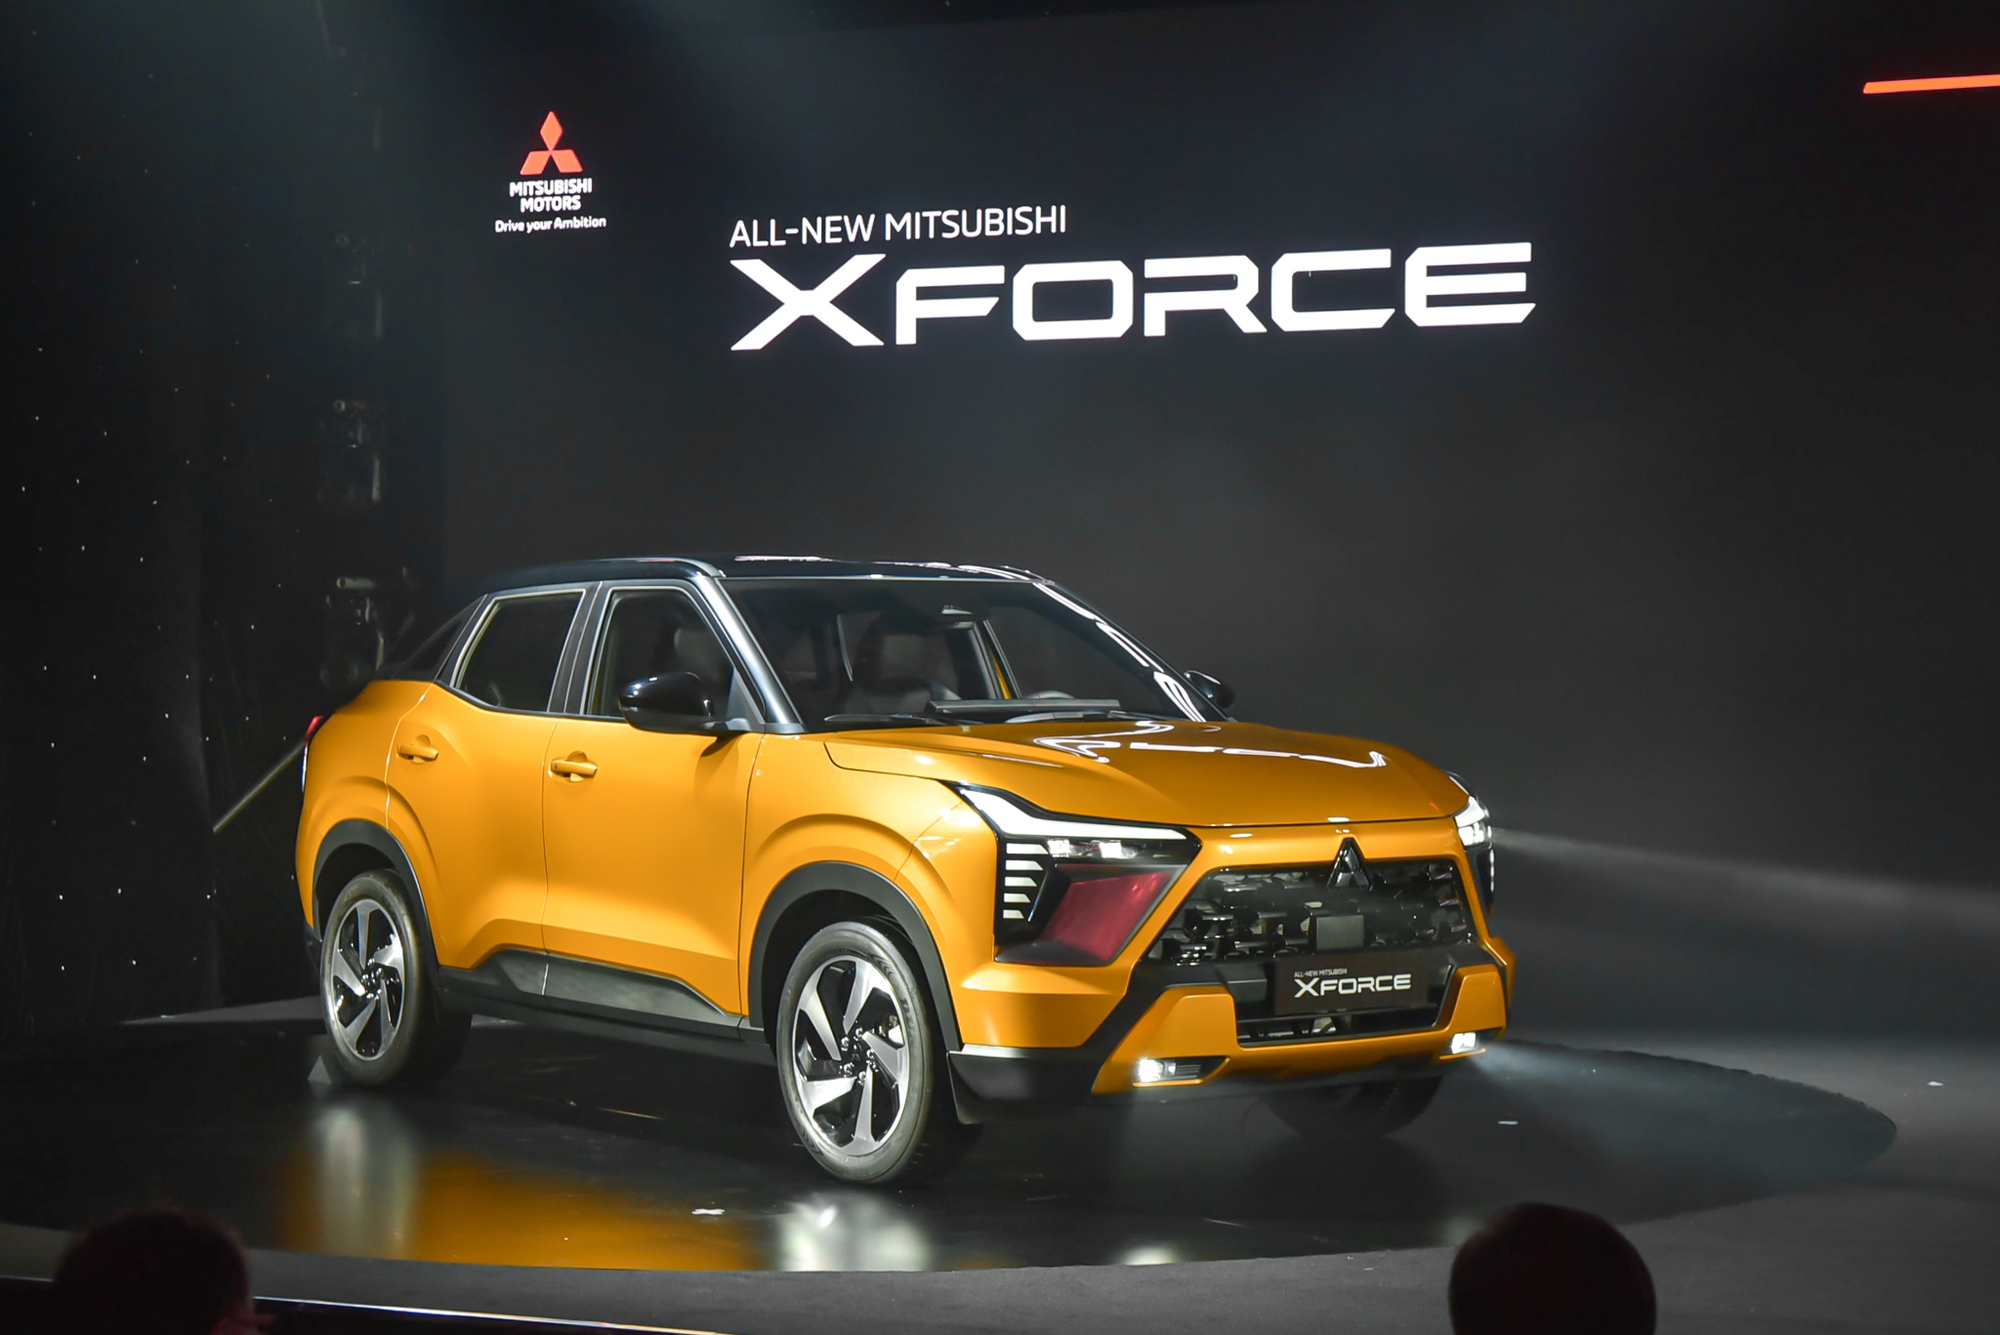 Chi tiết Mitsubishi Xforce bản ‘full option’ tại Việt Nam: Long lanh như concept, nhiều công nghệ lần đầu có trong phân khúc B - Ảnh 4.